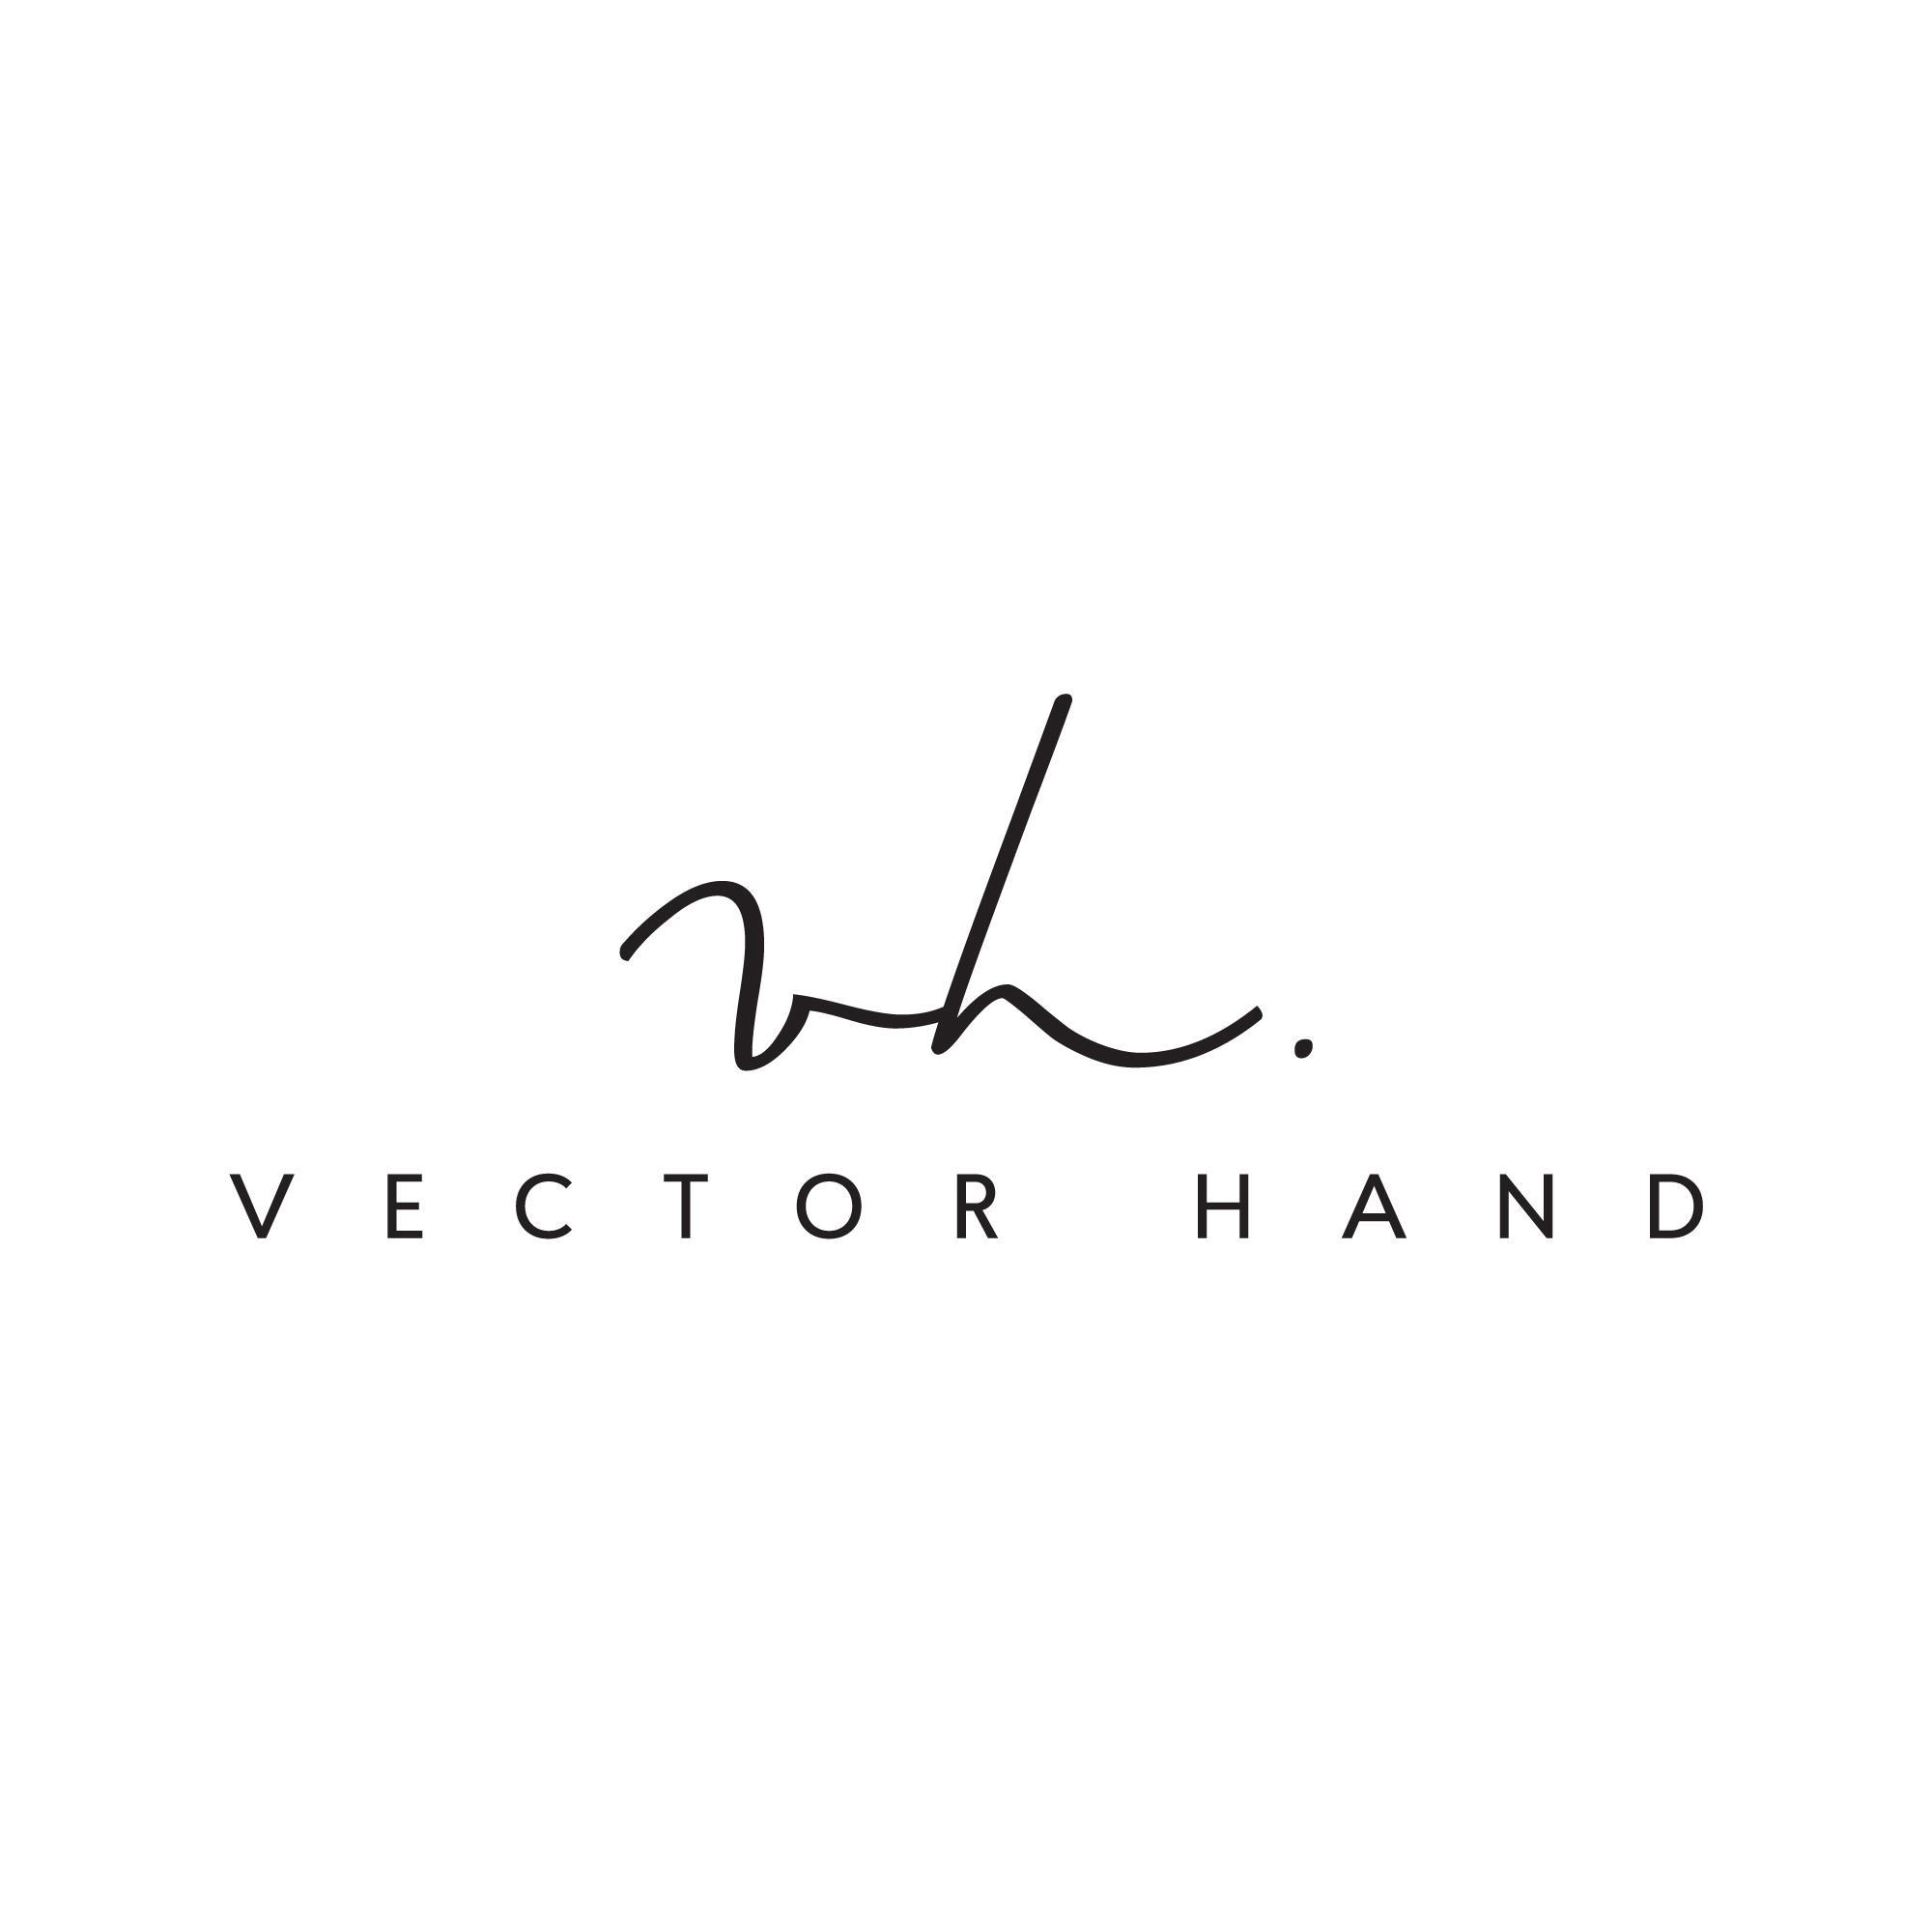 Vector Hand